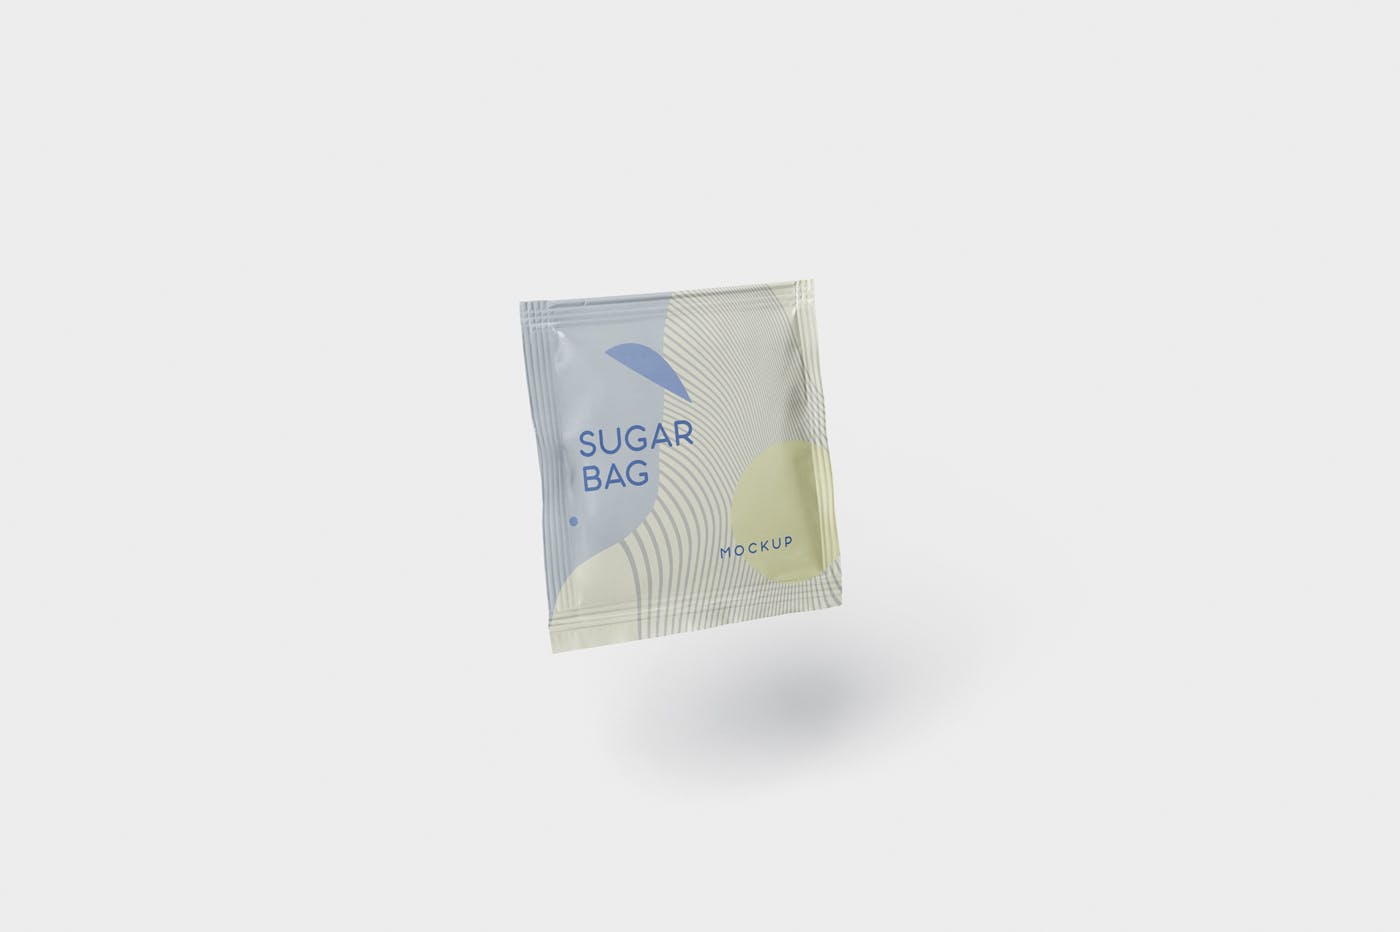 盐袋糖袋包装设计效果图素材库精选 Salt OR Sugar Bag Mockup – Square Shaped插图(4)